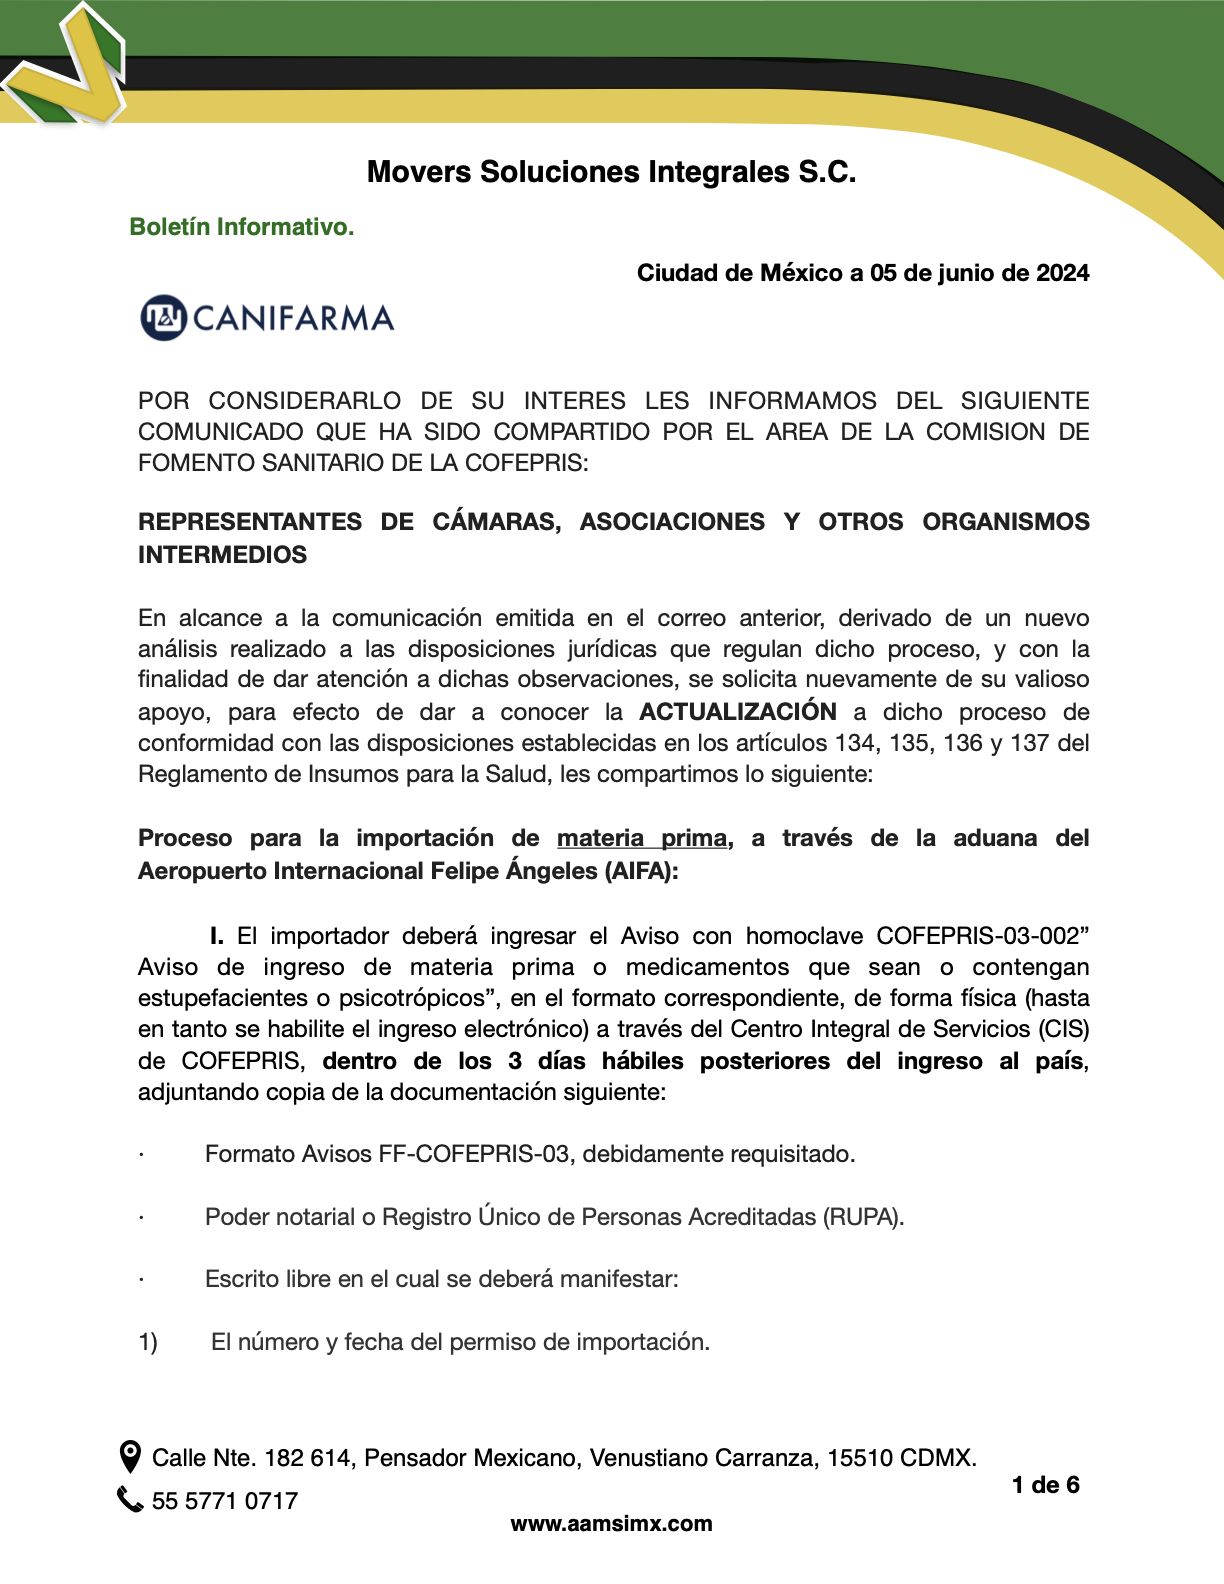 Proceso para la importación de materia prima, a través de la aduana del Aeropuerto Internacional Felipe Ángeles (AIFA):